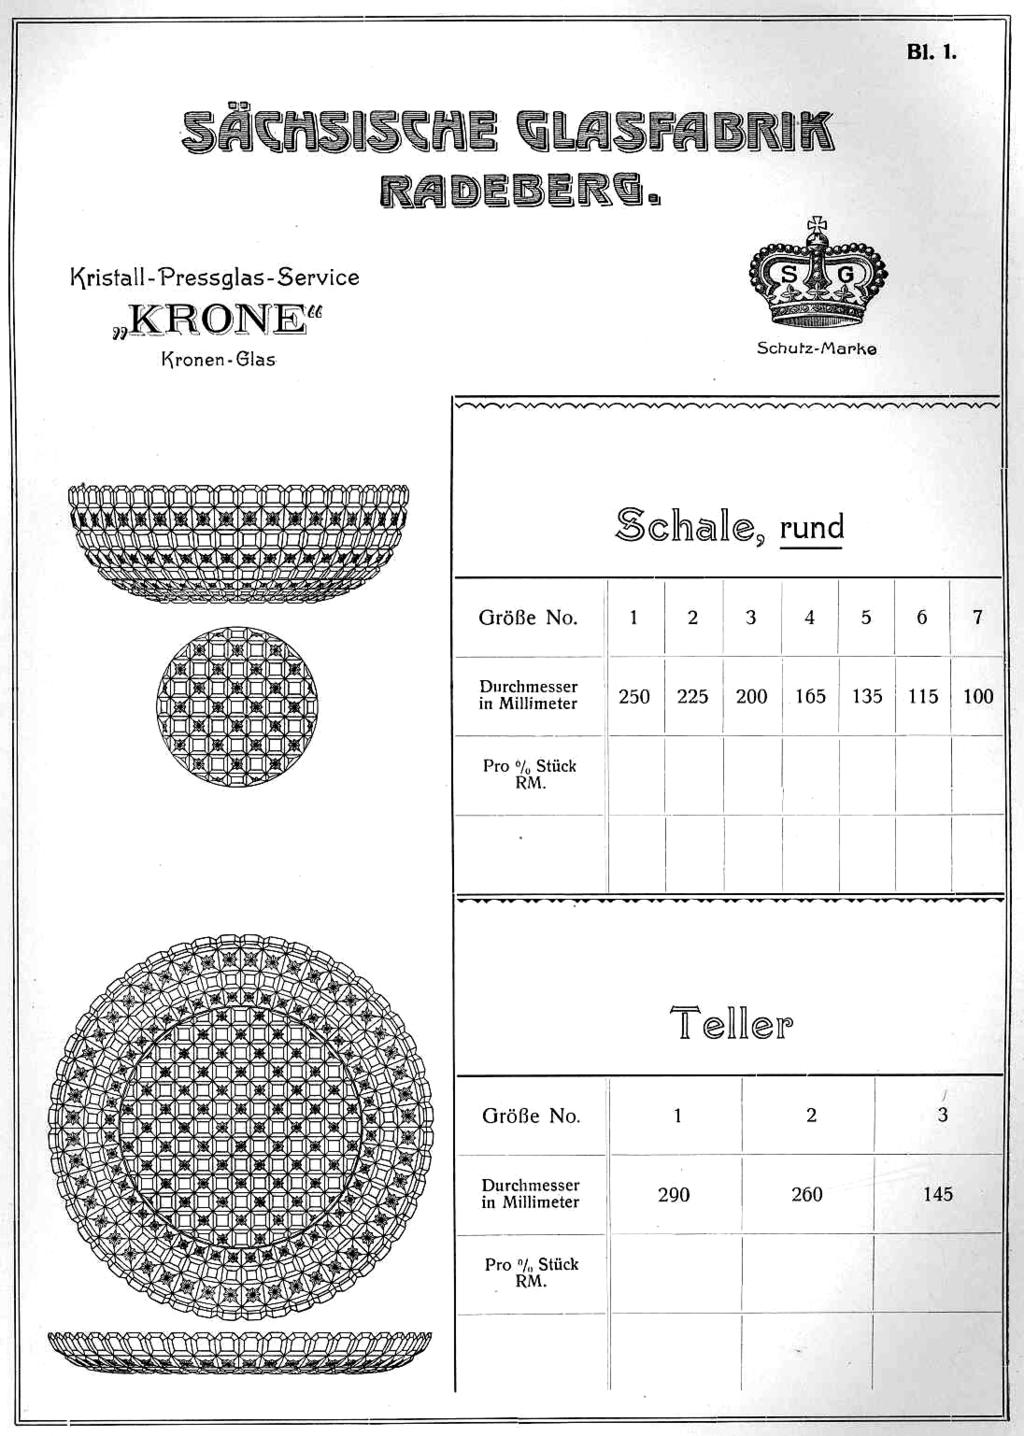 Abb. 2005-1-15/032; MB SG Radeberg 1927, Service Krone, Blatt 1;